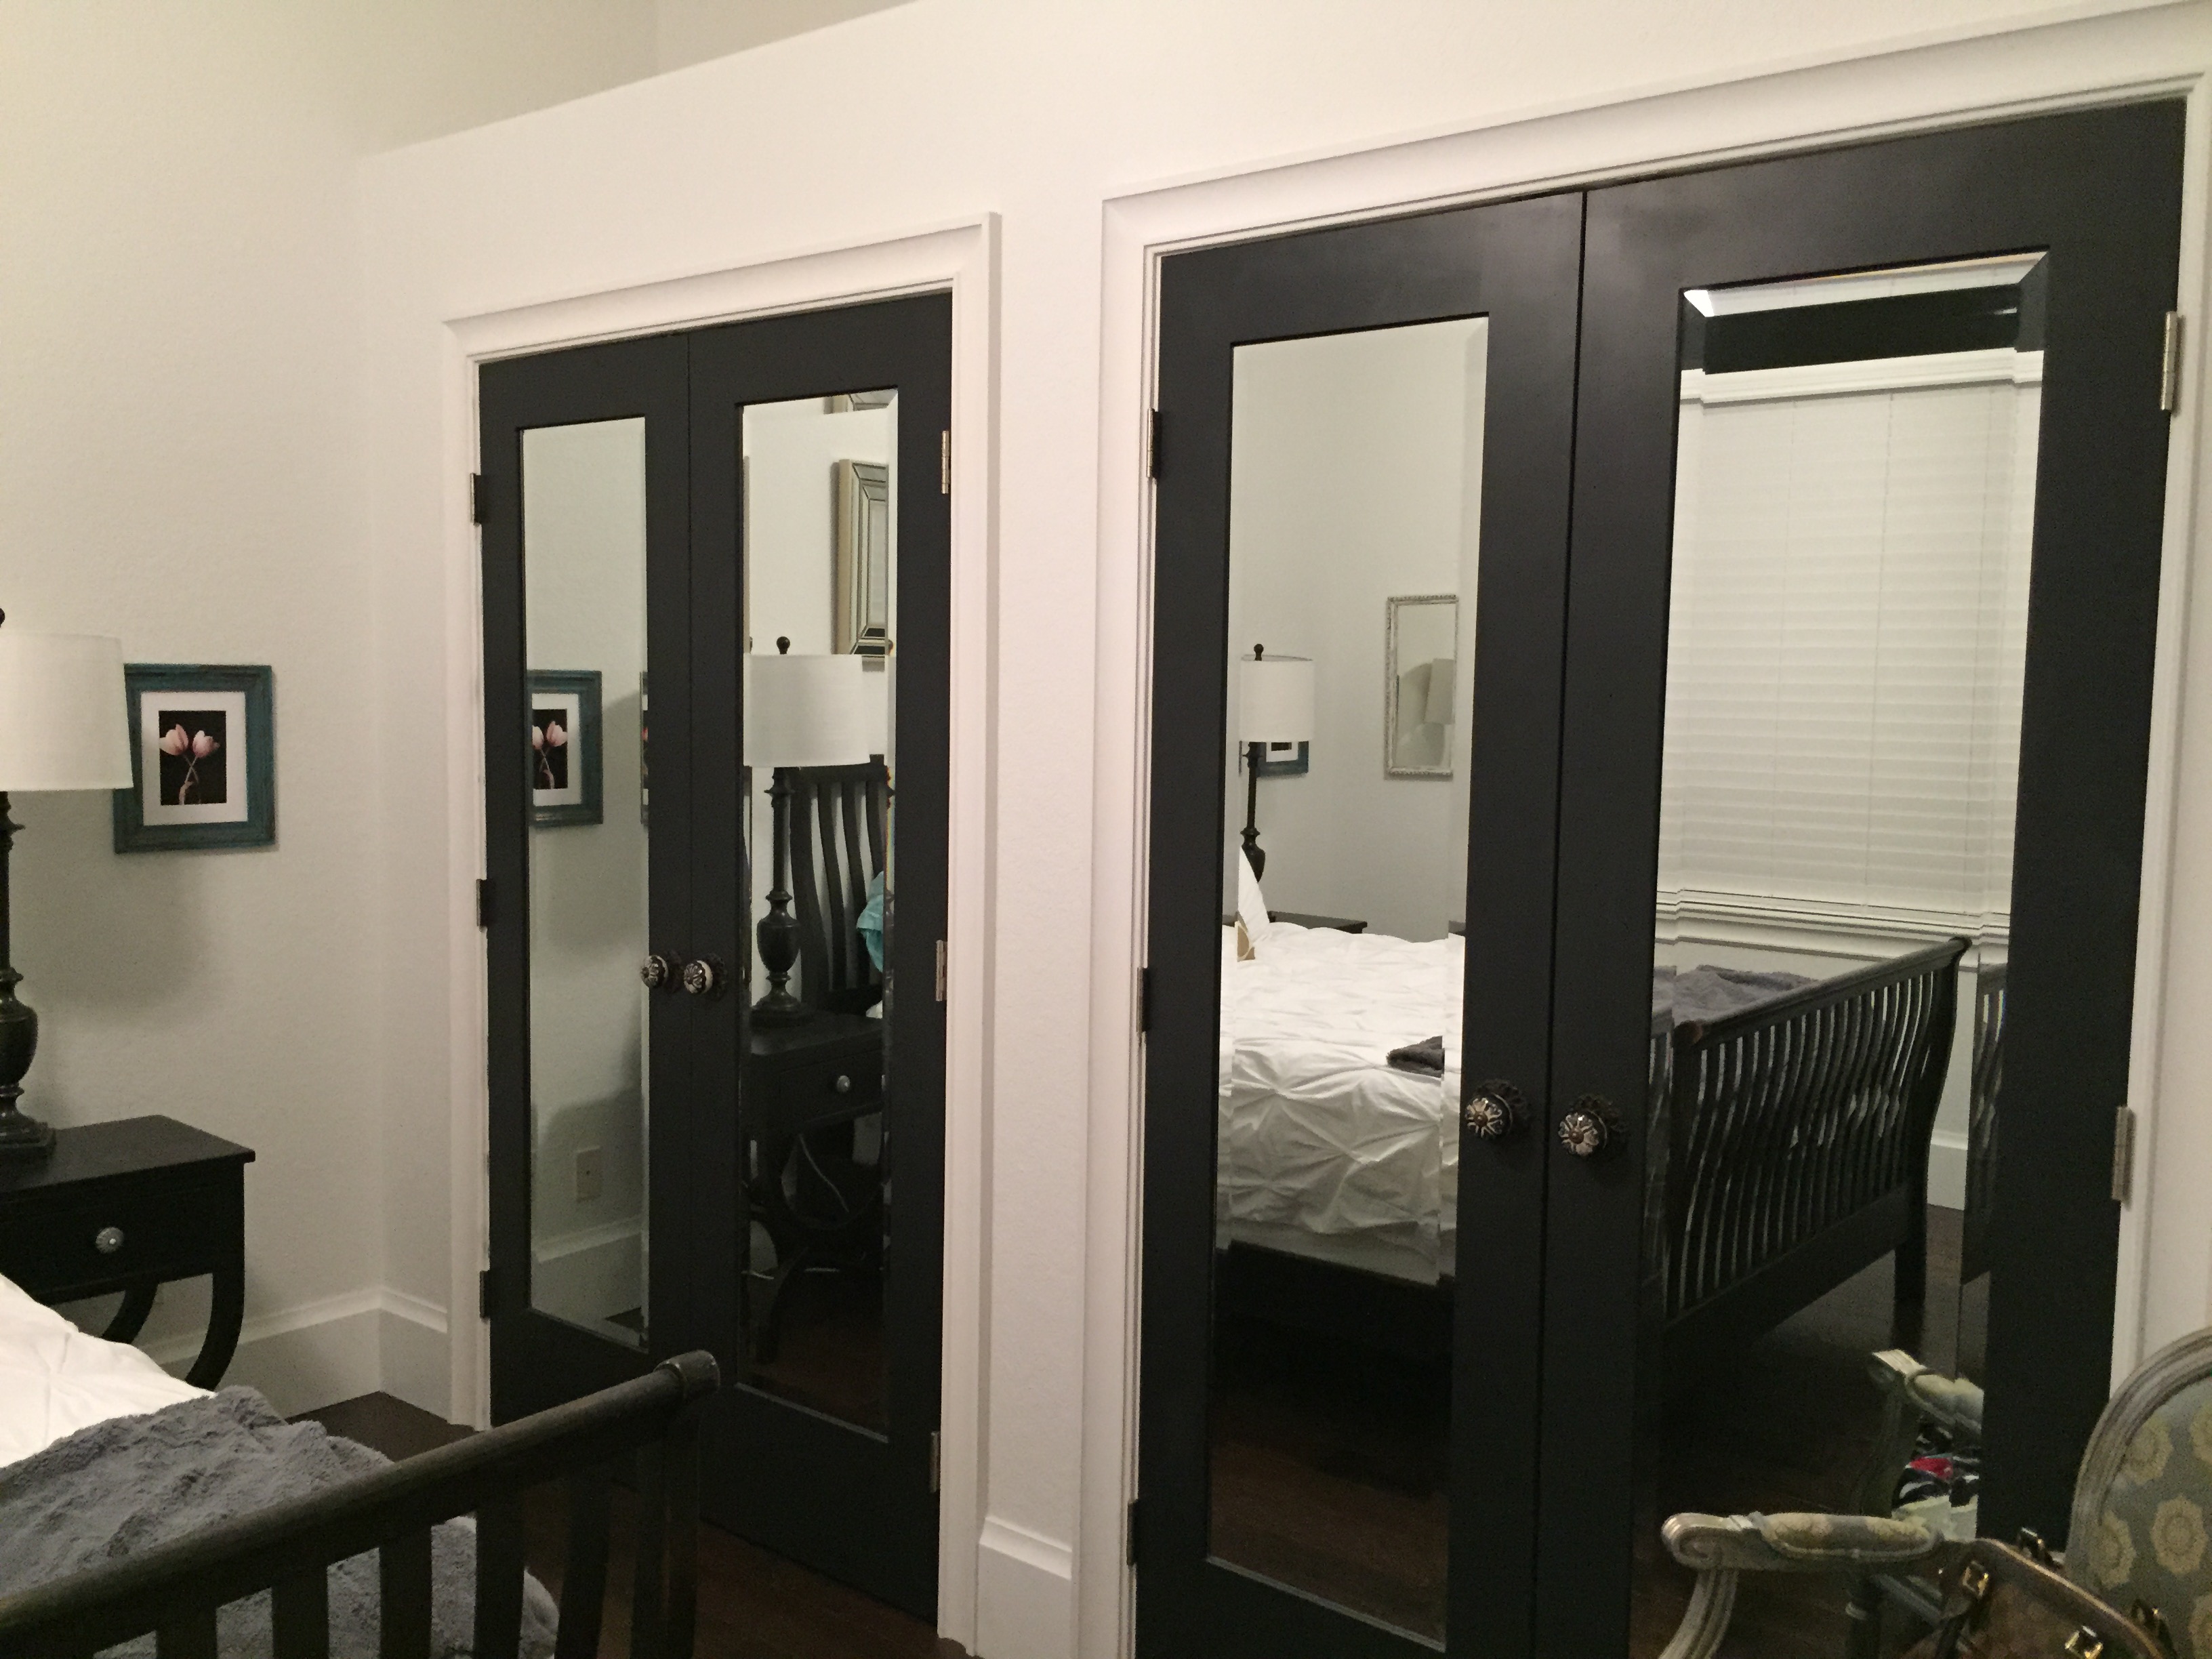 Mirror Closet Door Options, How To Get Mirror Closet Doors